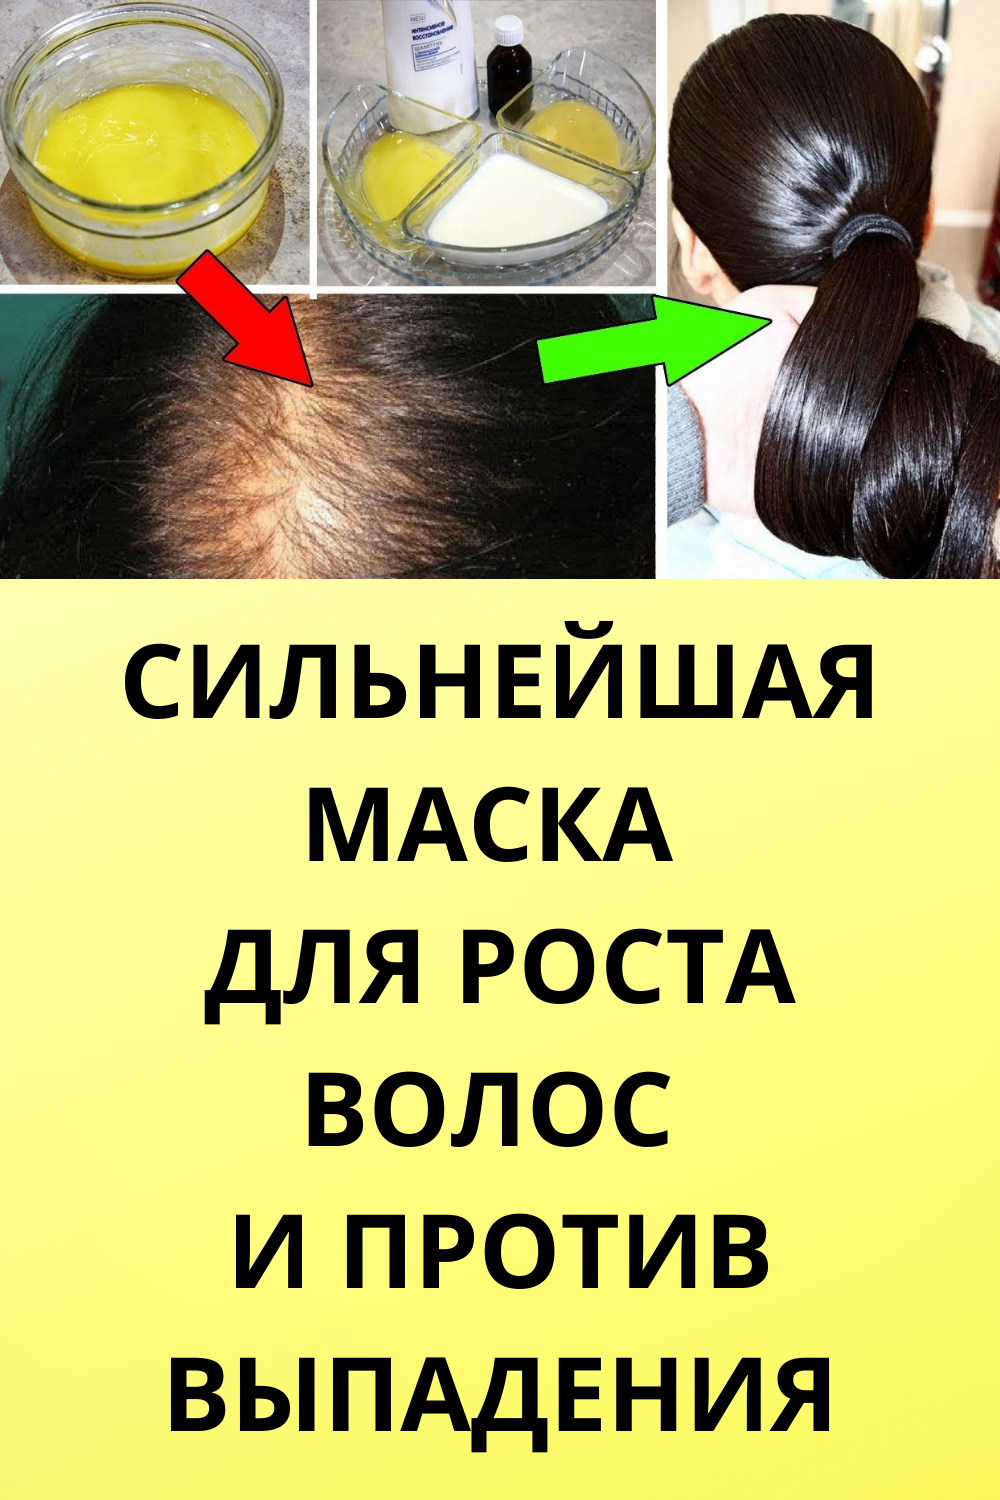 Обзор лучших масок для волос